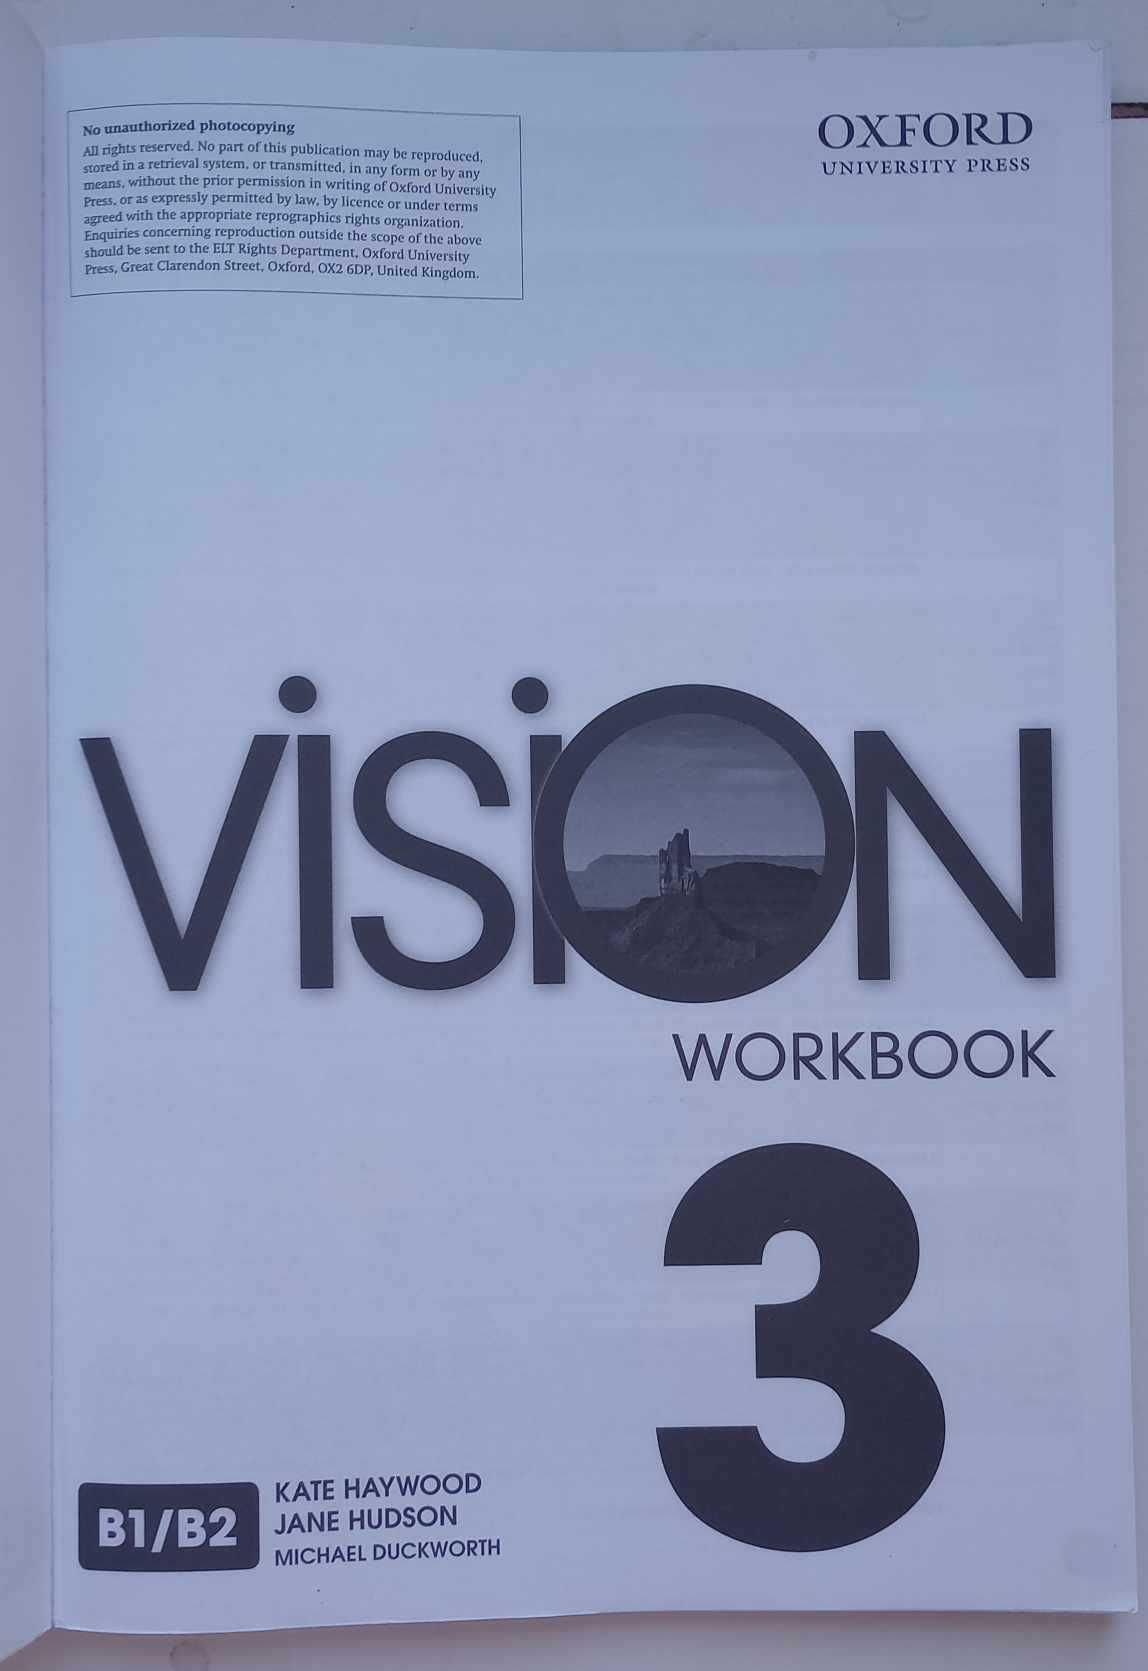 ,,VISION 3" Workbook. Oxford